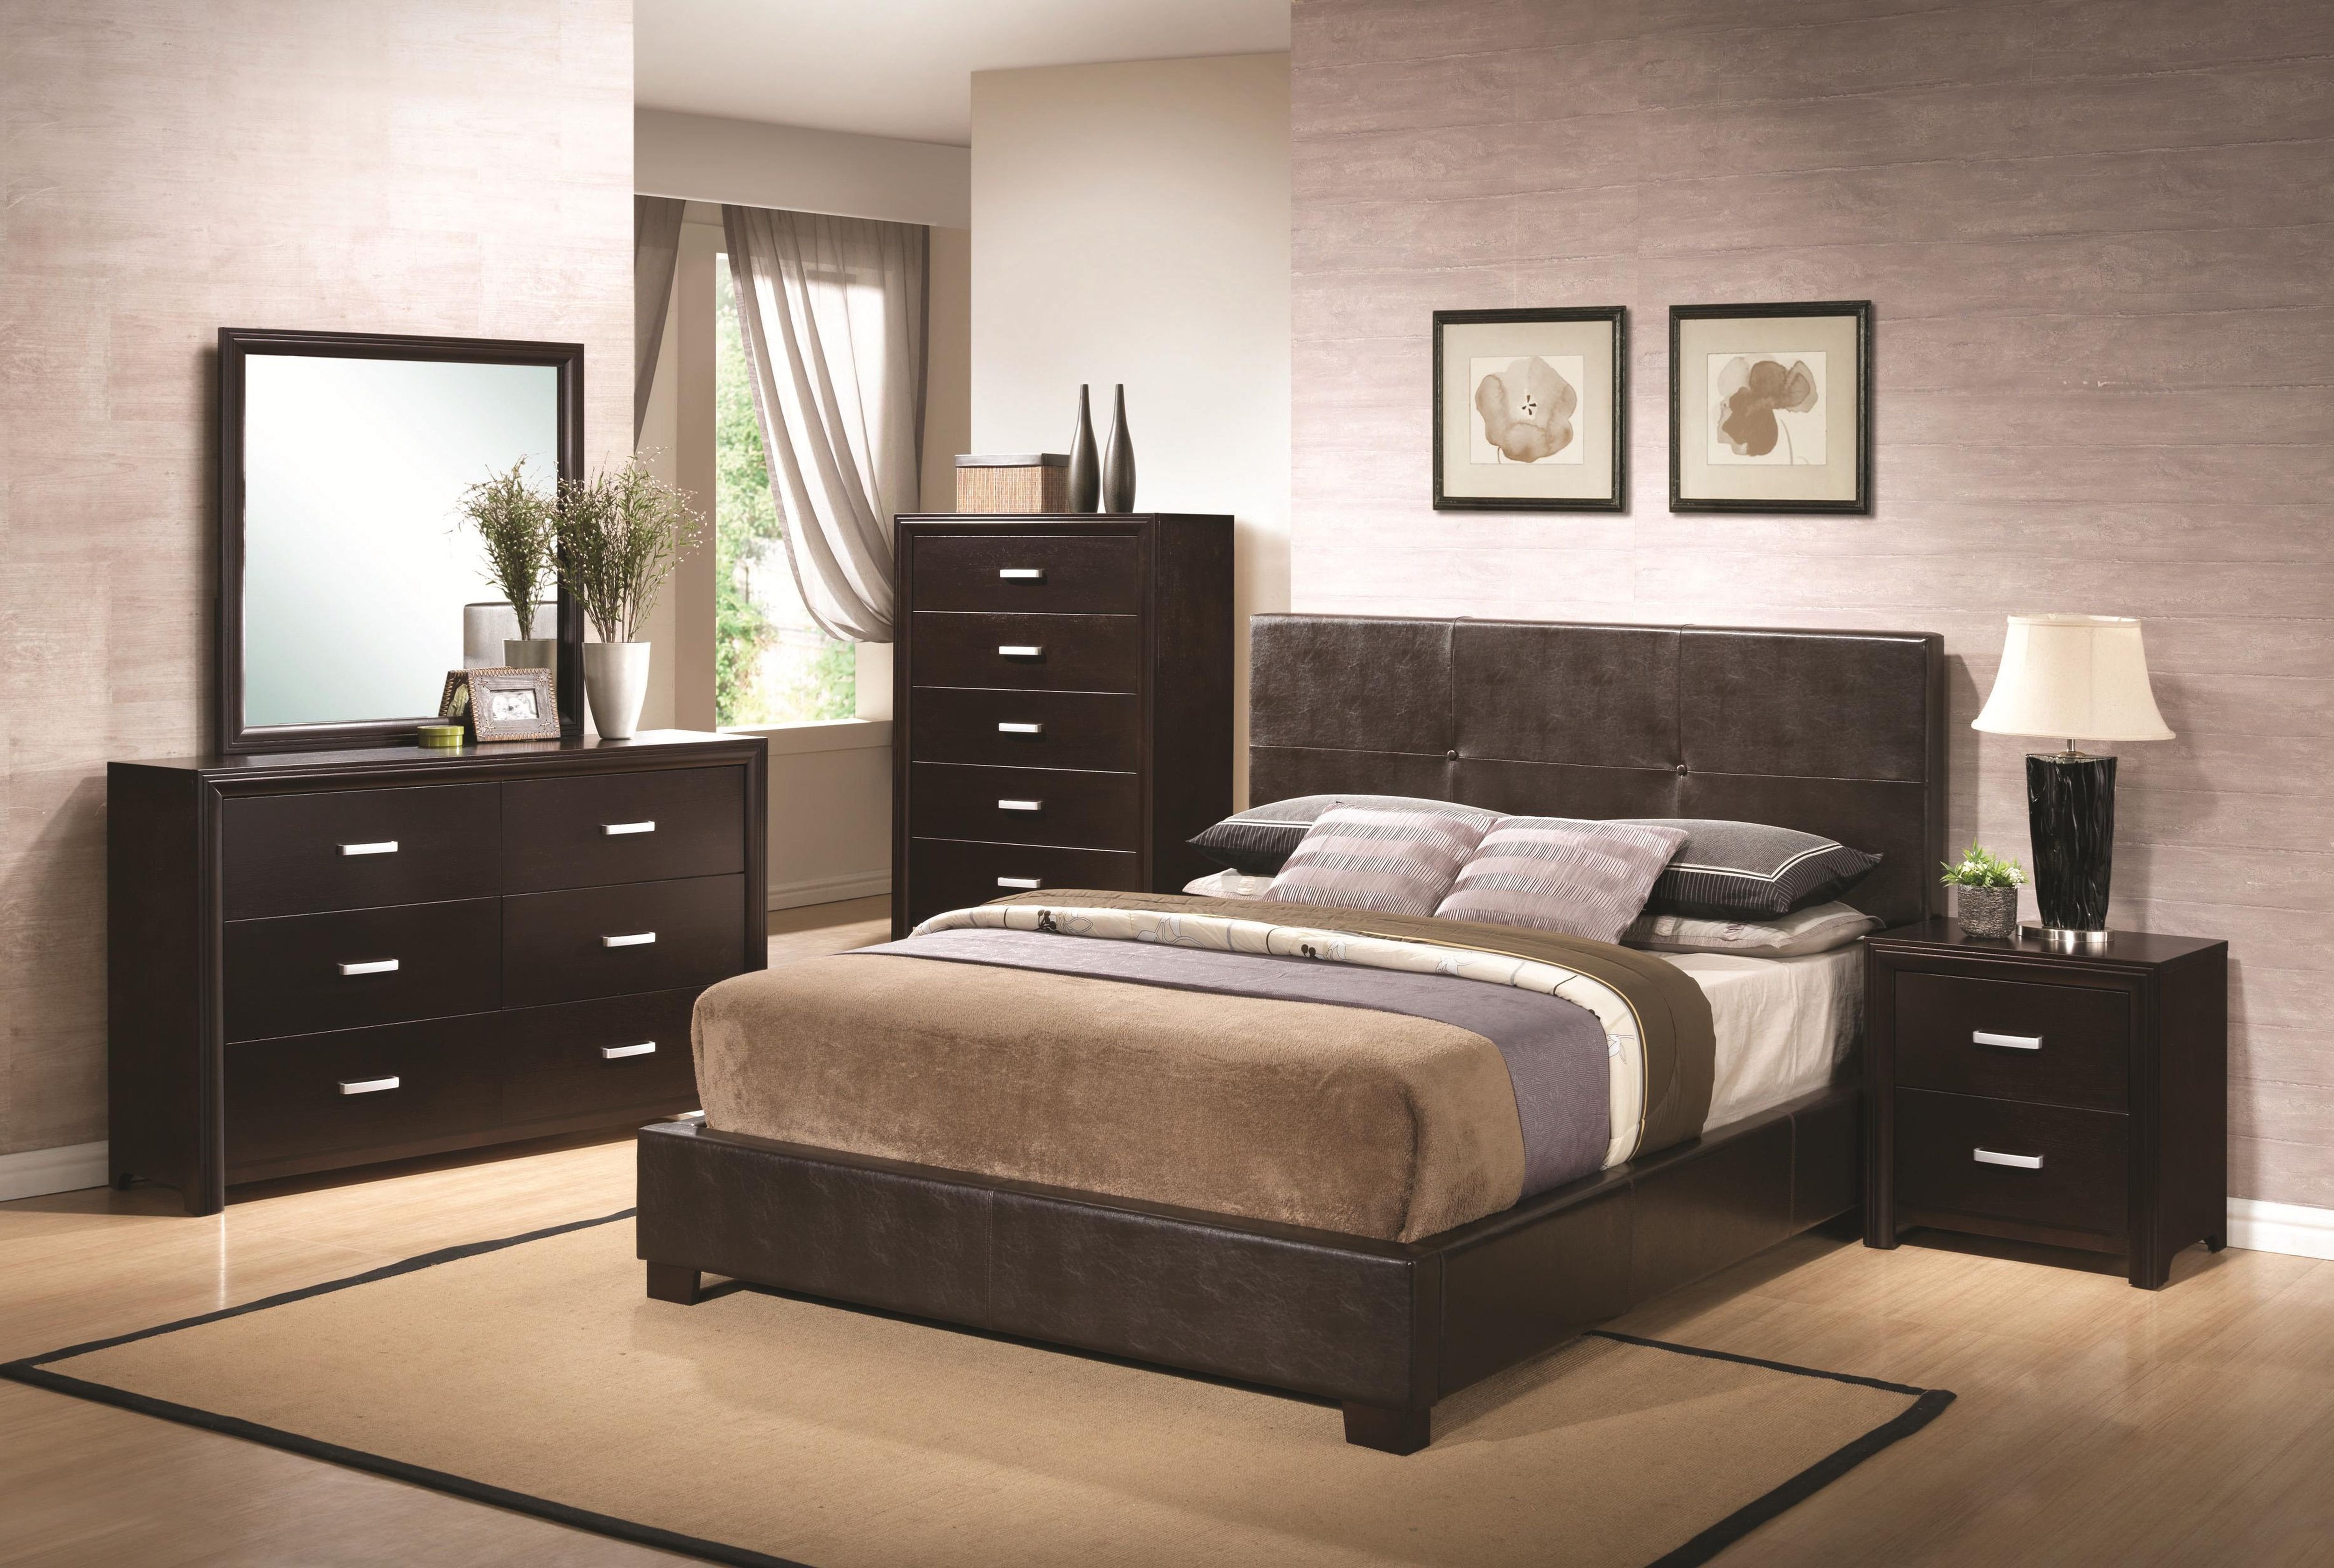 queen bedroom furniture set ikea